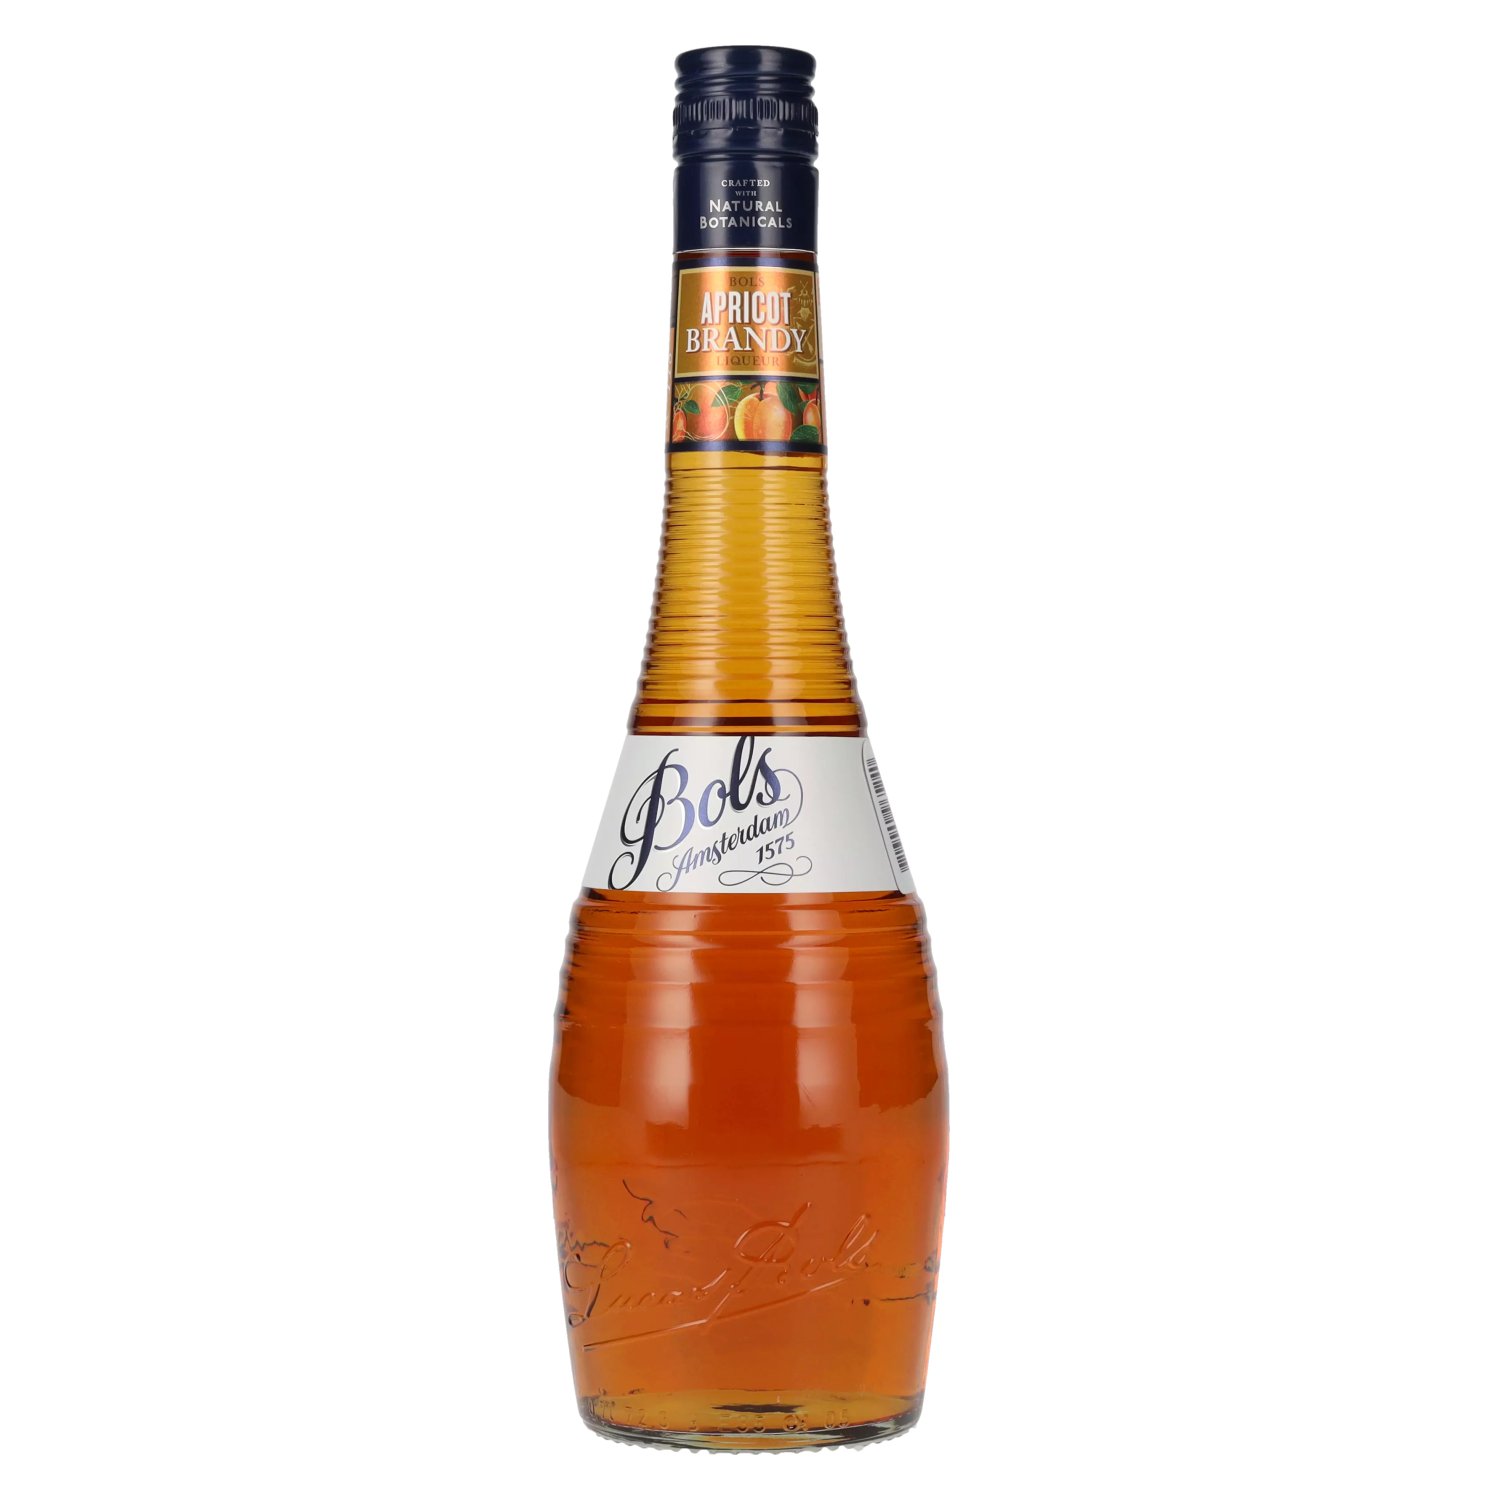 0,7l Apricot Brandy 24% delicando Liqueur Vol. - Bols